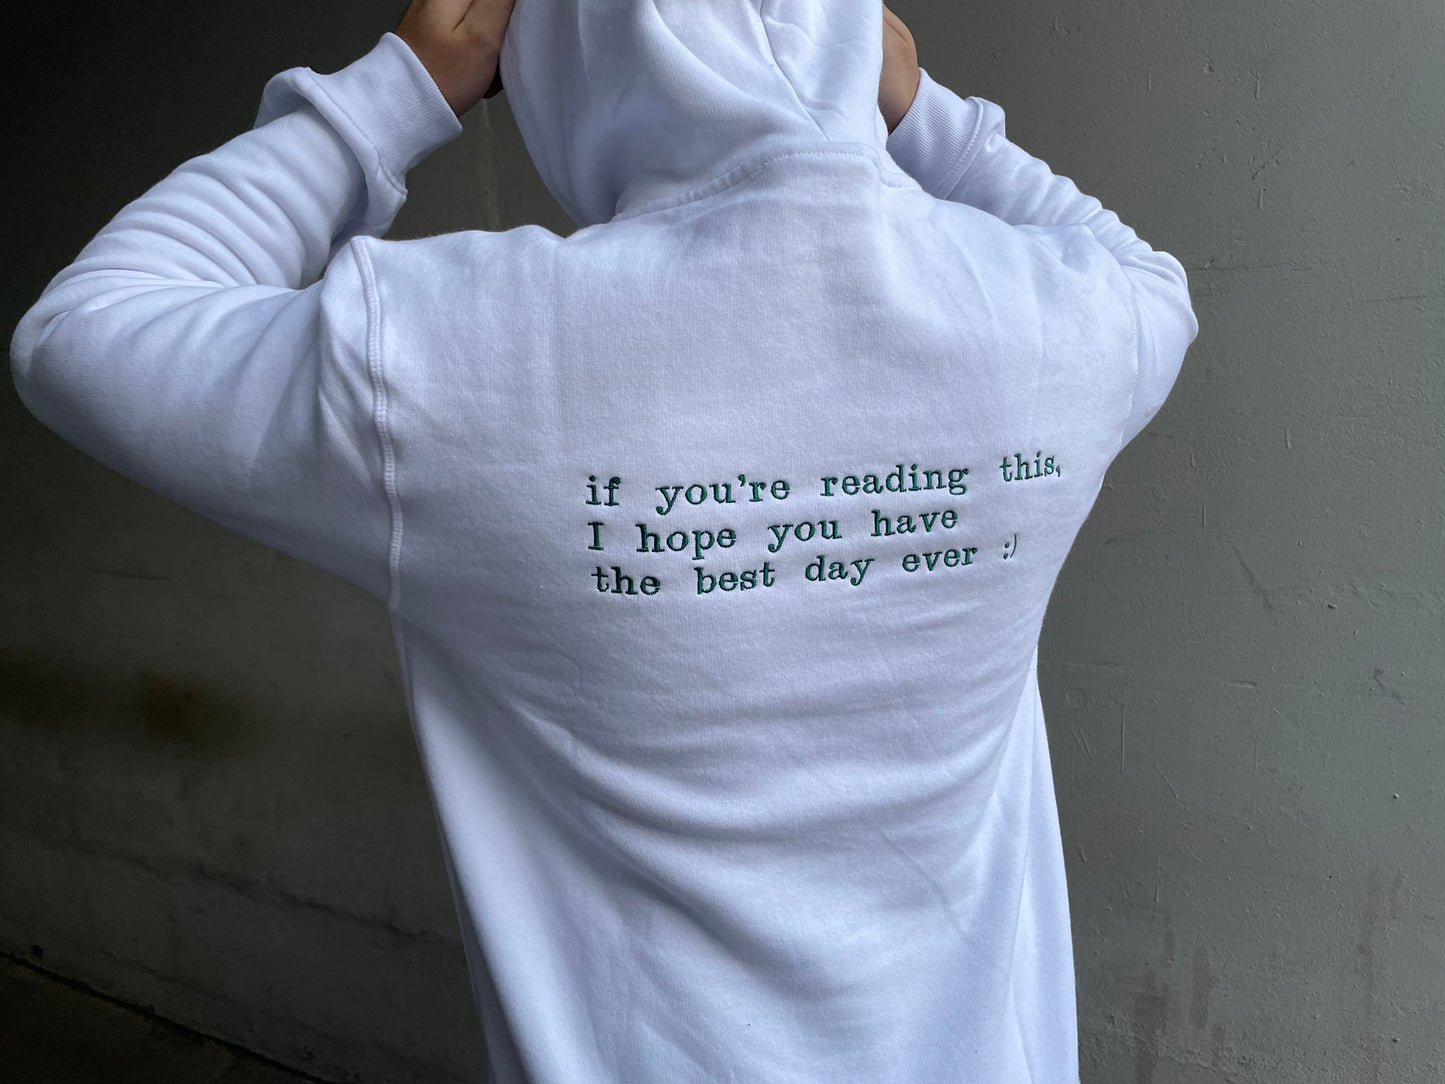 Dein Spruch - Personalisierter Rücken Sweatshirt / Hoodie